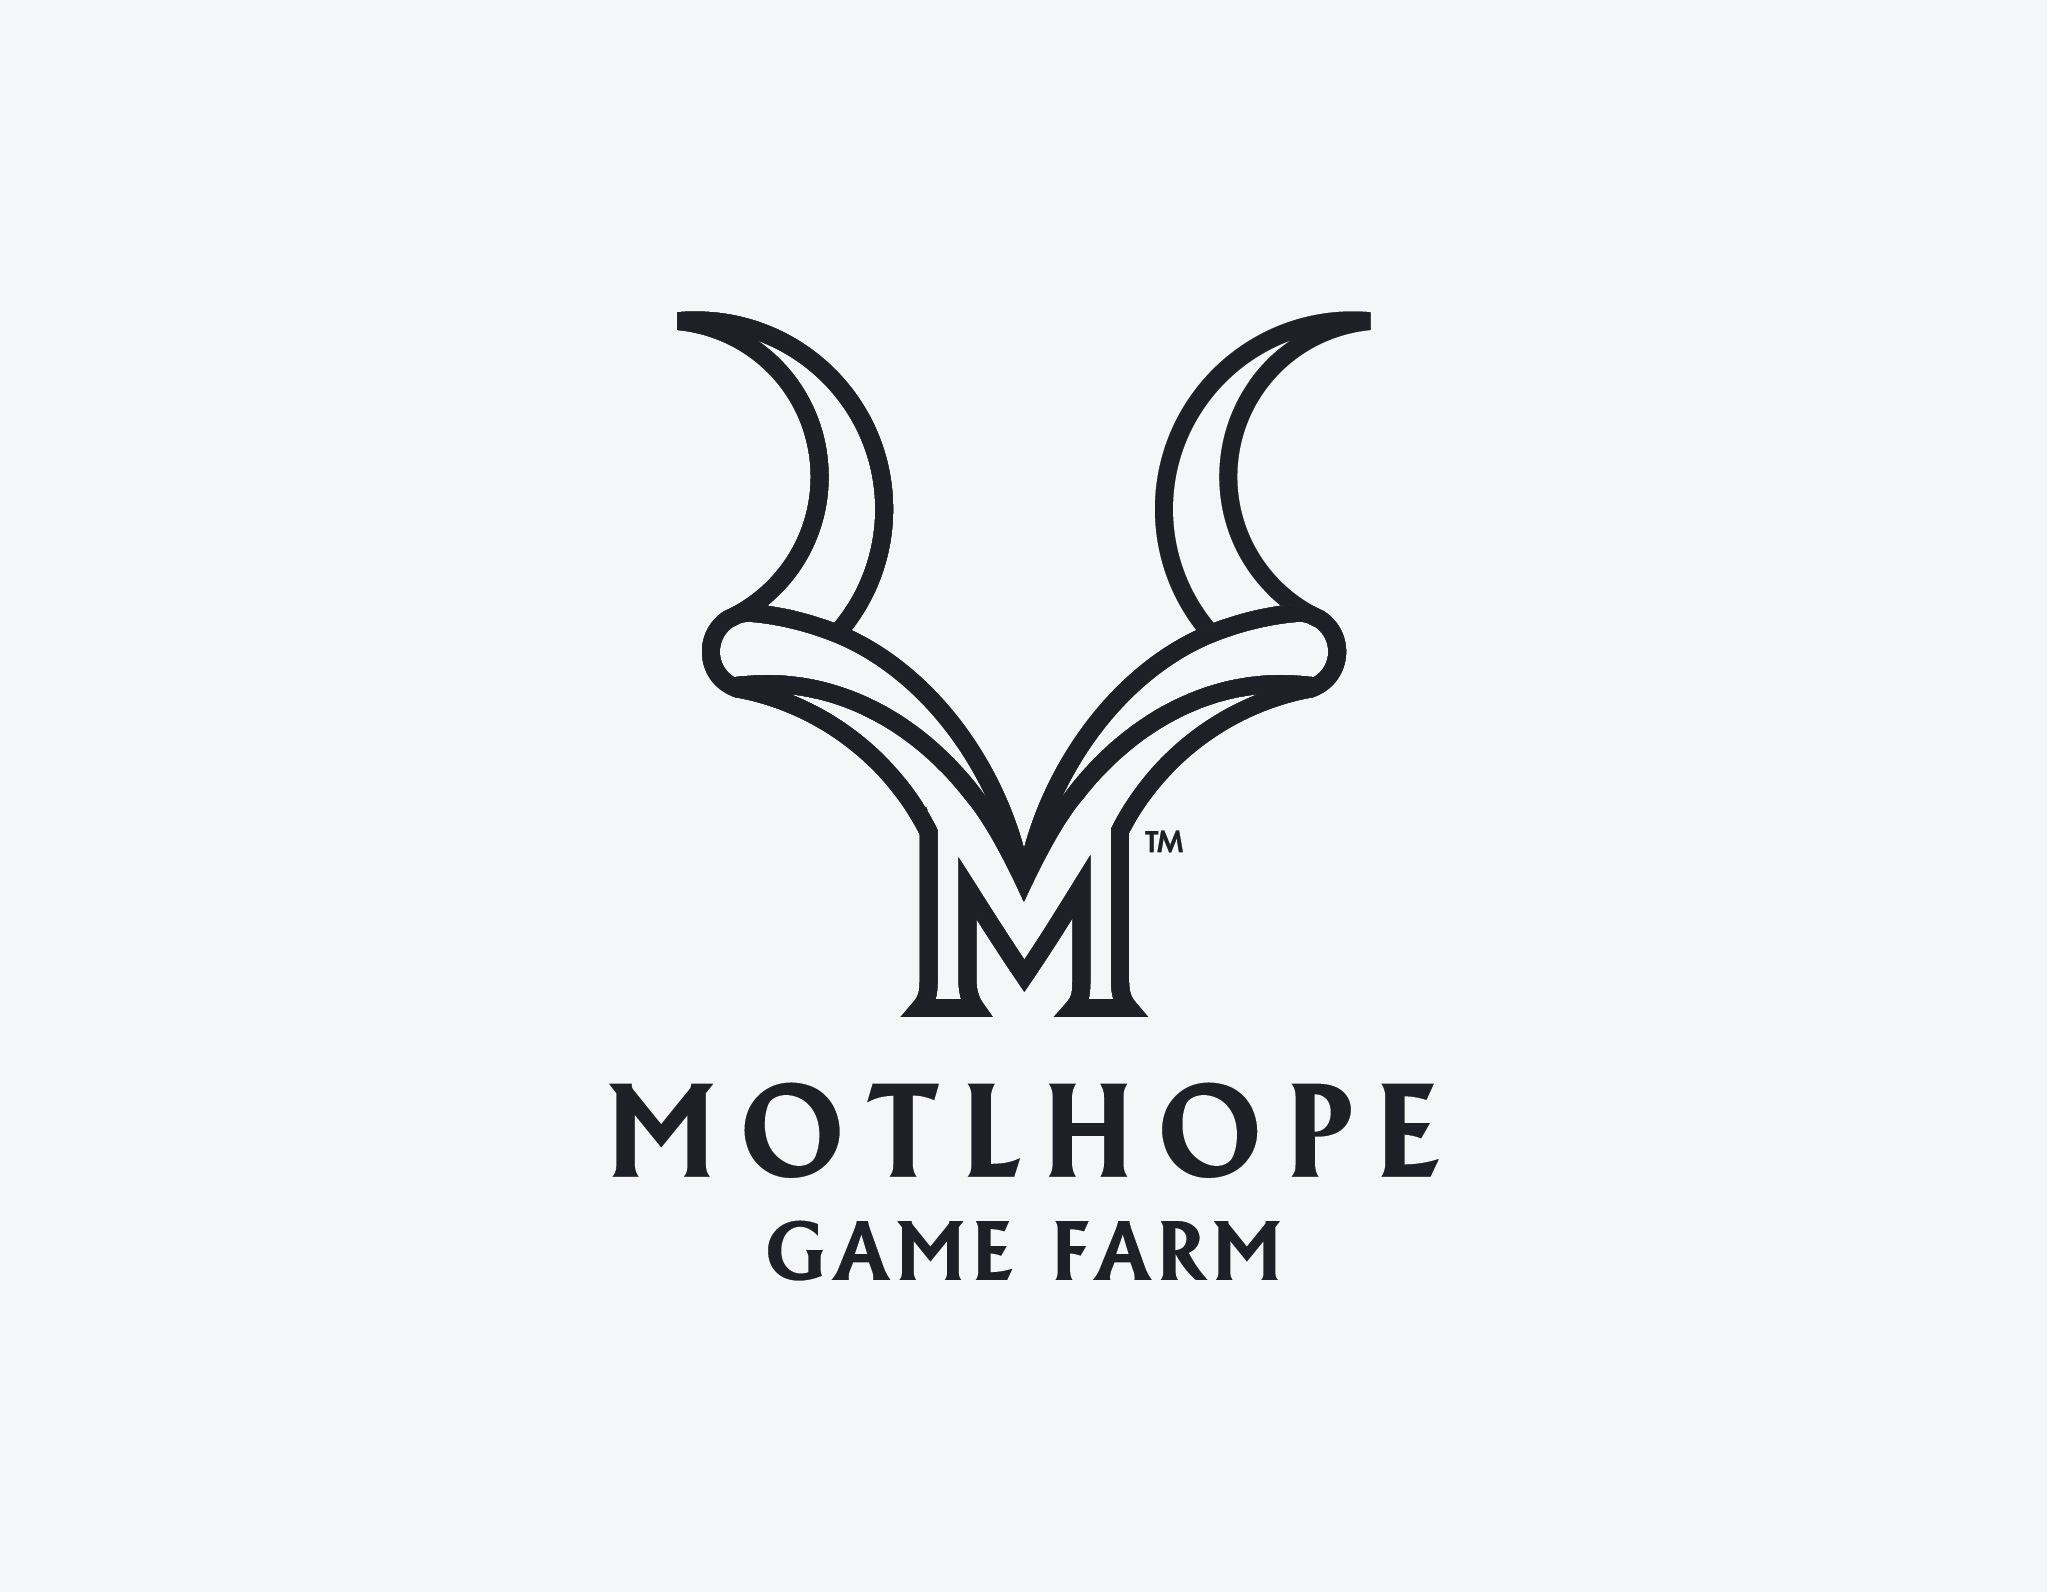 Mothlope Game Farm logo